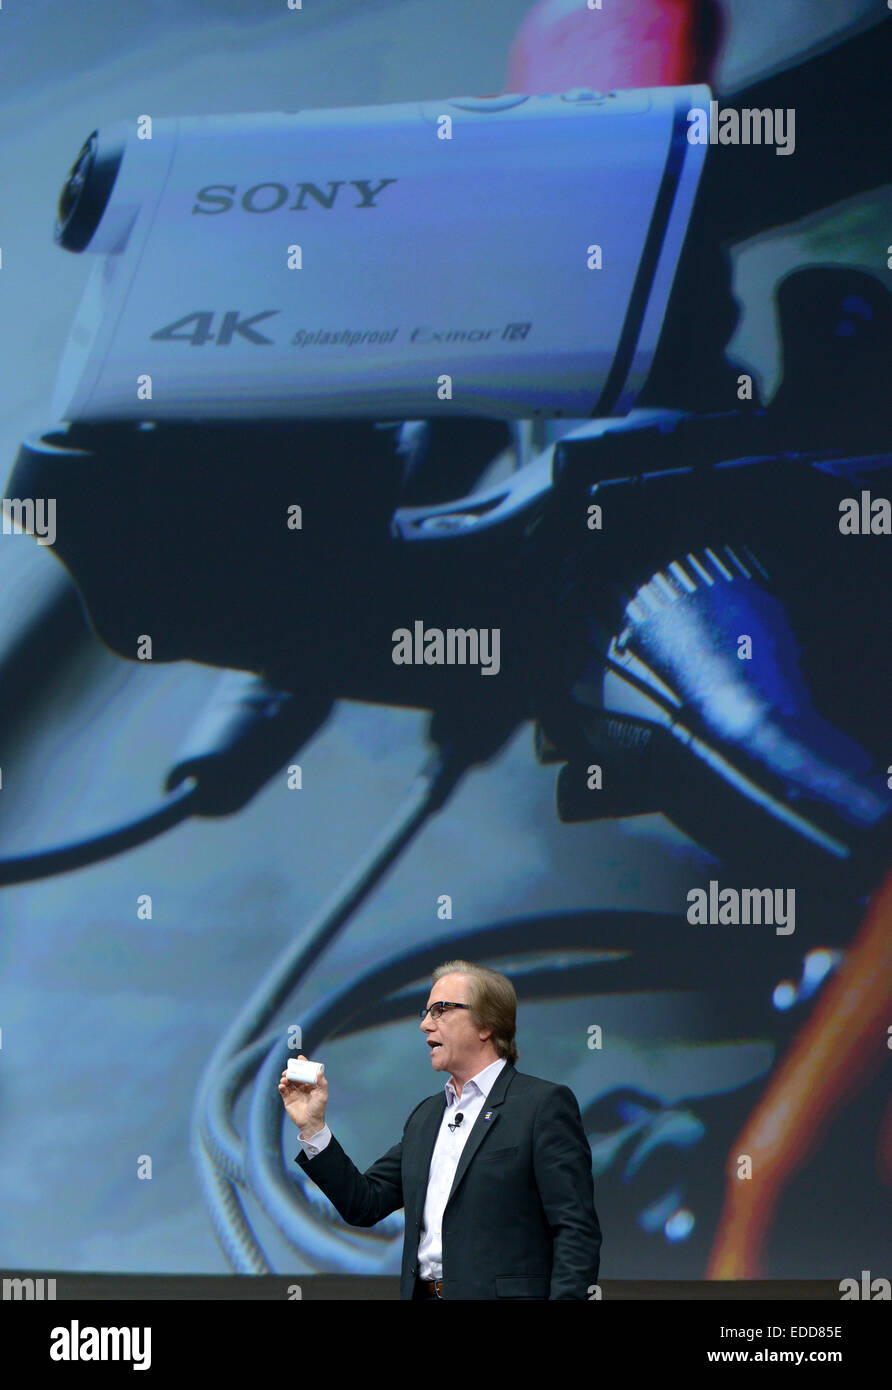 Las Vegas, EE.UU. 5 de enero de 2015. Sony Electronics Presidente y COO Mike Fasulo muestra la acción de 4K de Sony Cam en una conferencia de prensa durante el 2015 International Consumer Electronics Show (CES) en Las Vegas, Estados Unidos, el 5 de enero de 2015. Crédito: Bogu Yin/Xinhua/Alamy Live News Foto de stock